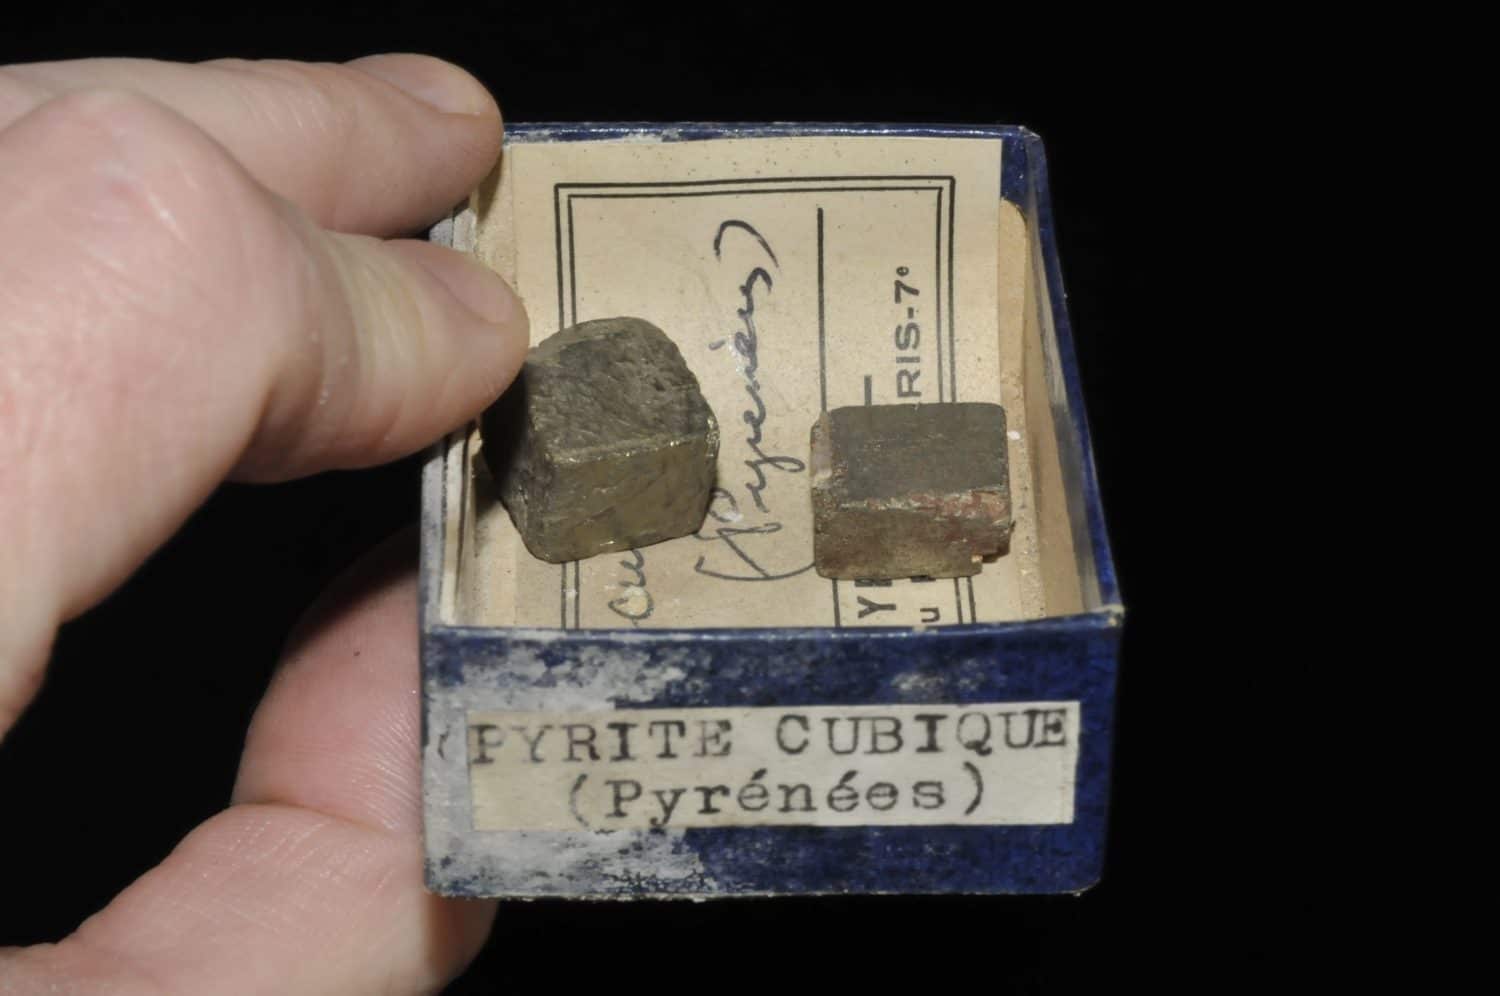 Pyrite cubique des Pyrénées (ex Deyrolle).